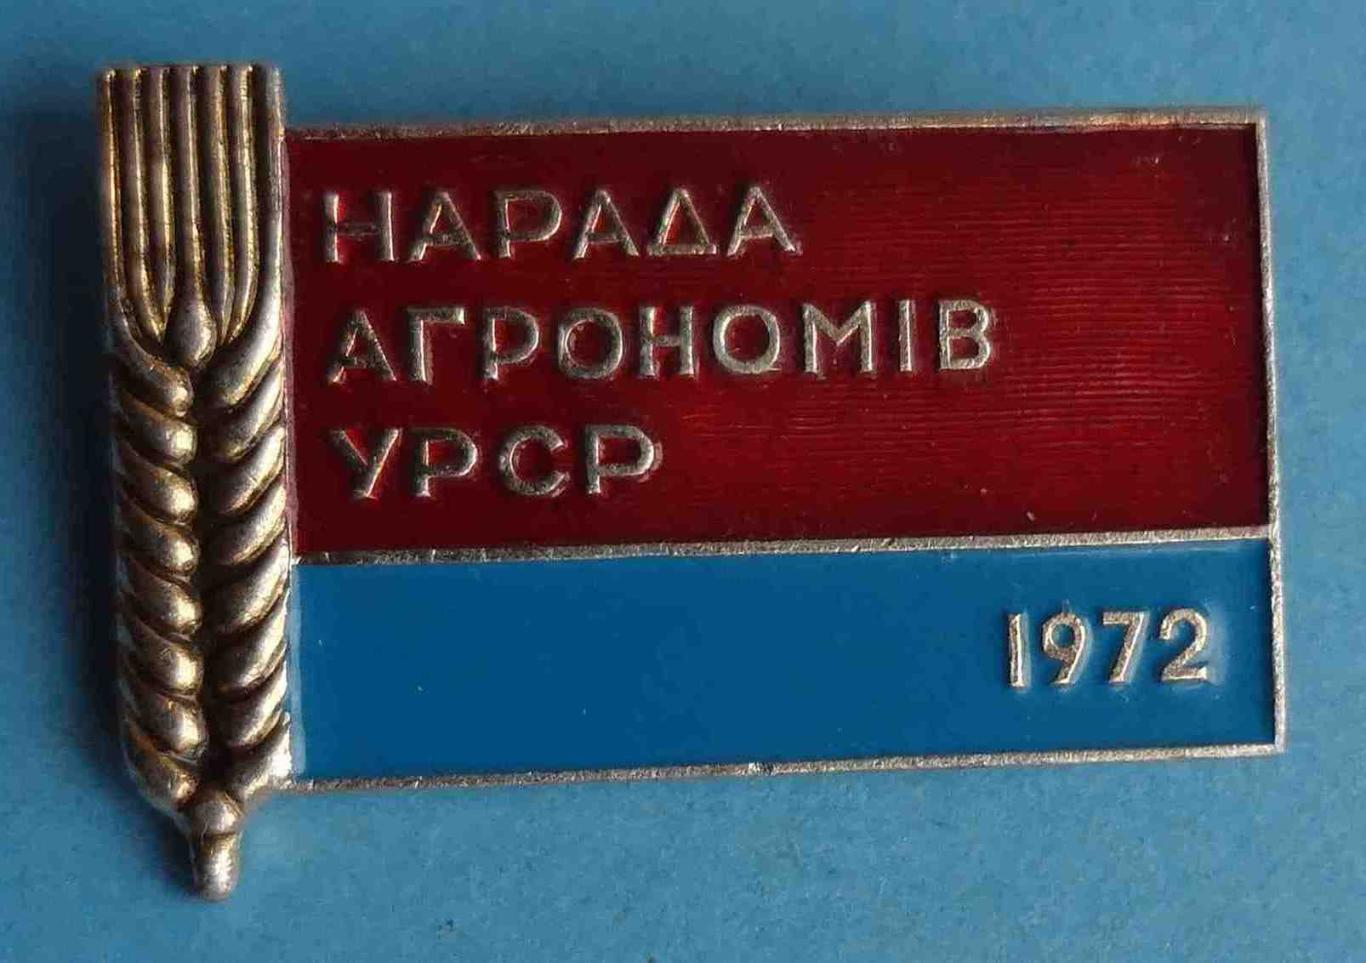 Совещание агрономов УССР 1972 флаг 2 (8)